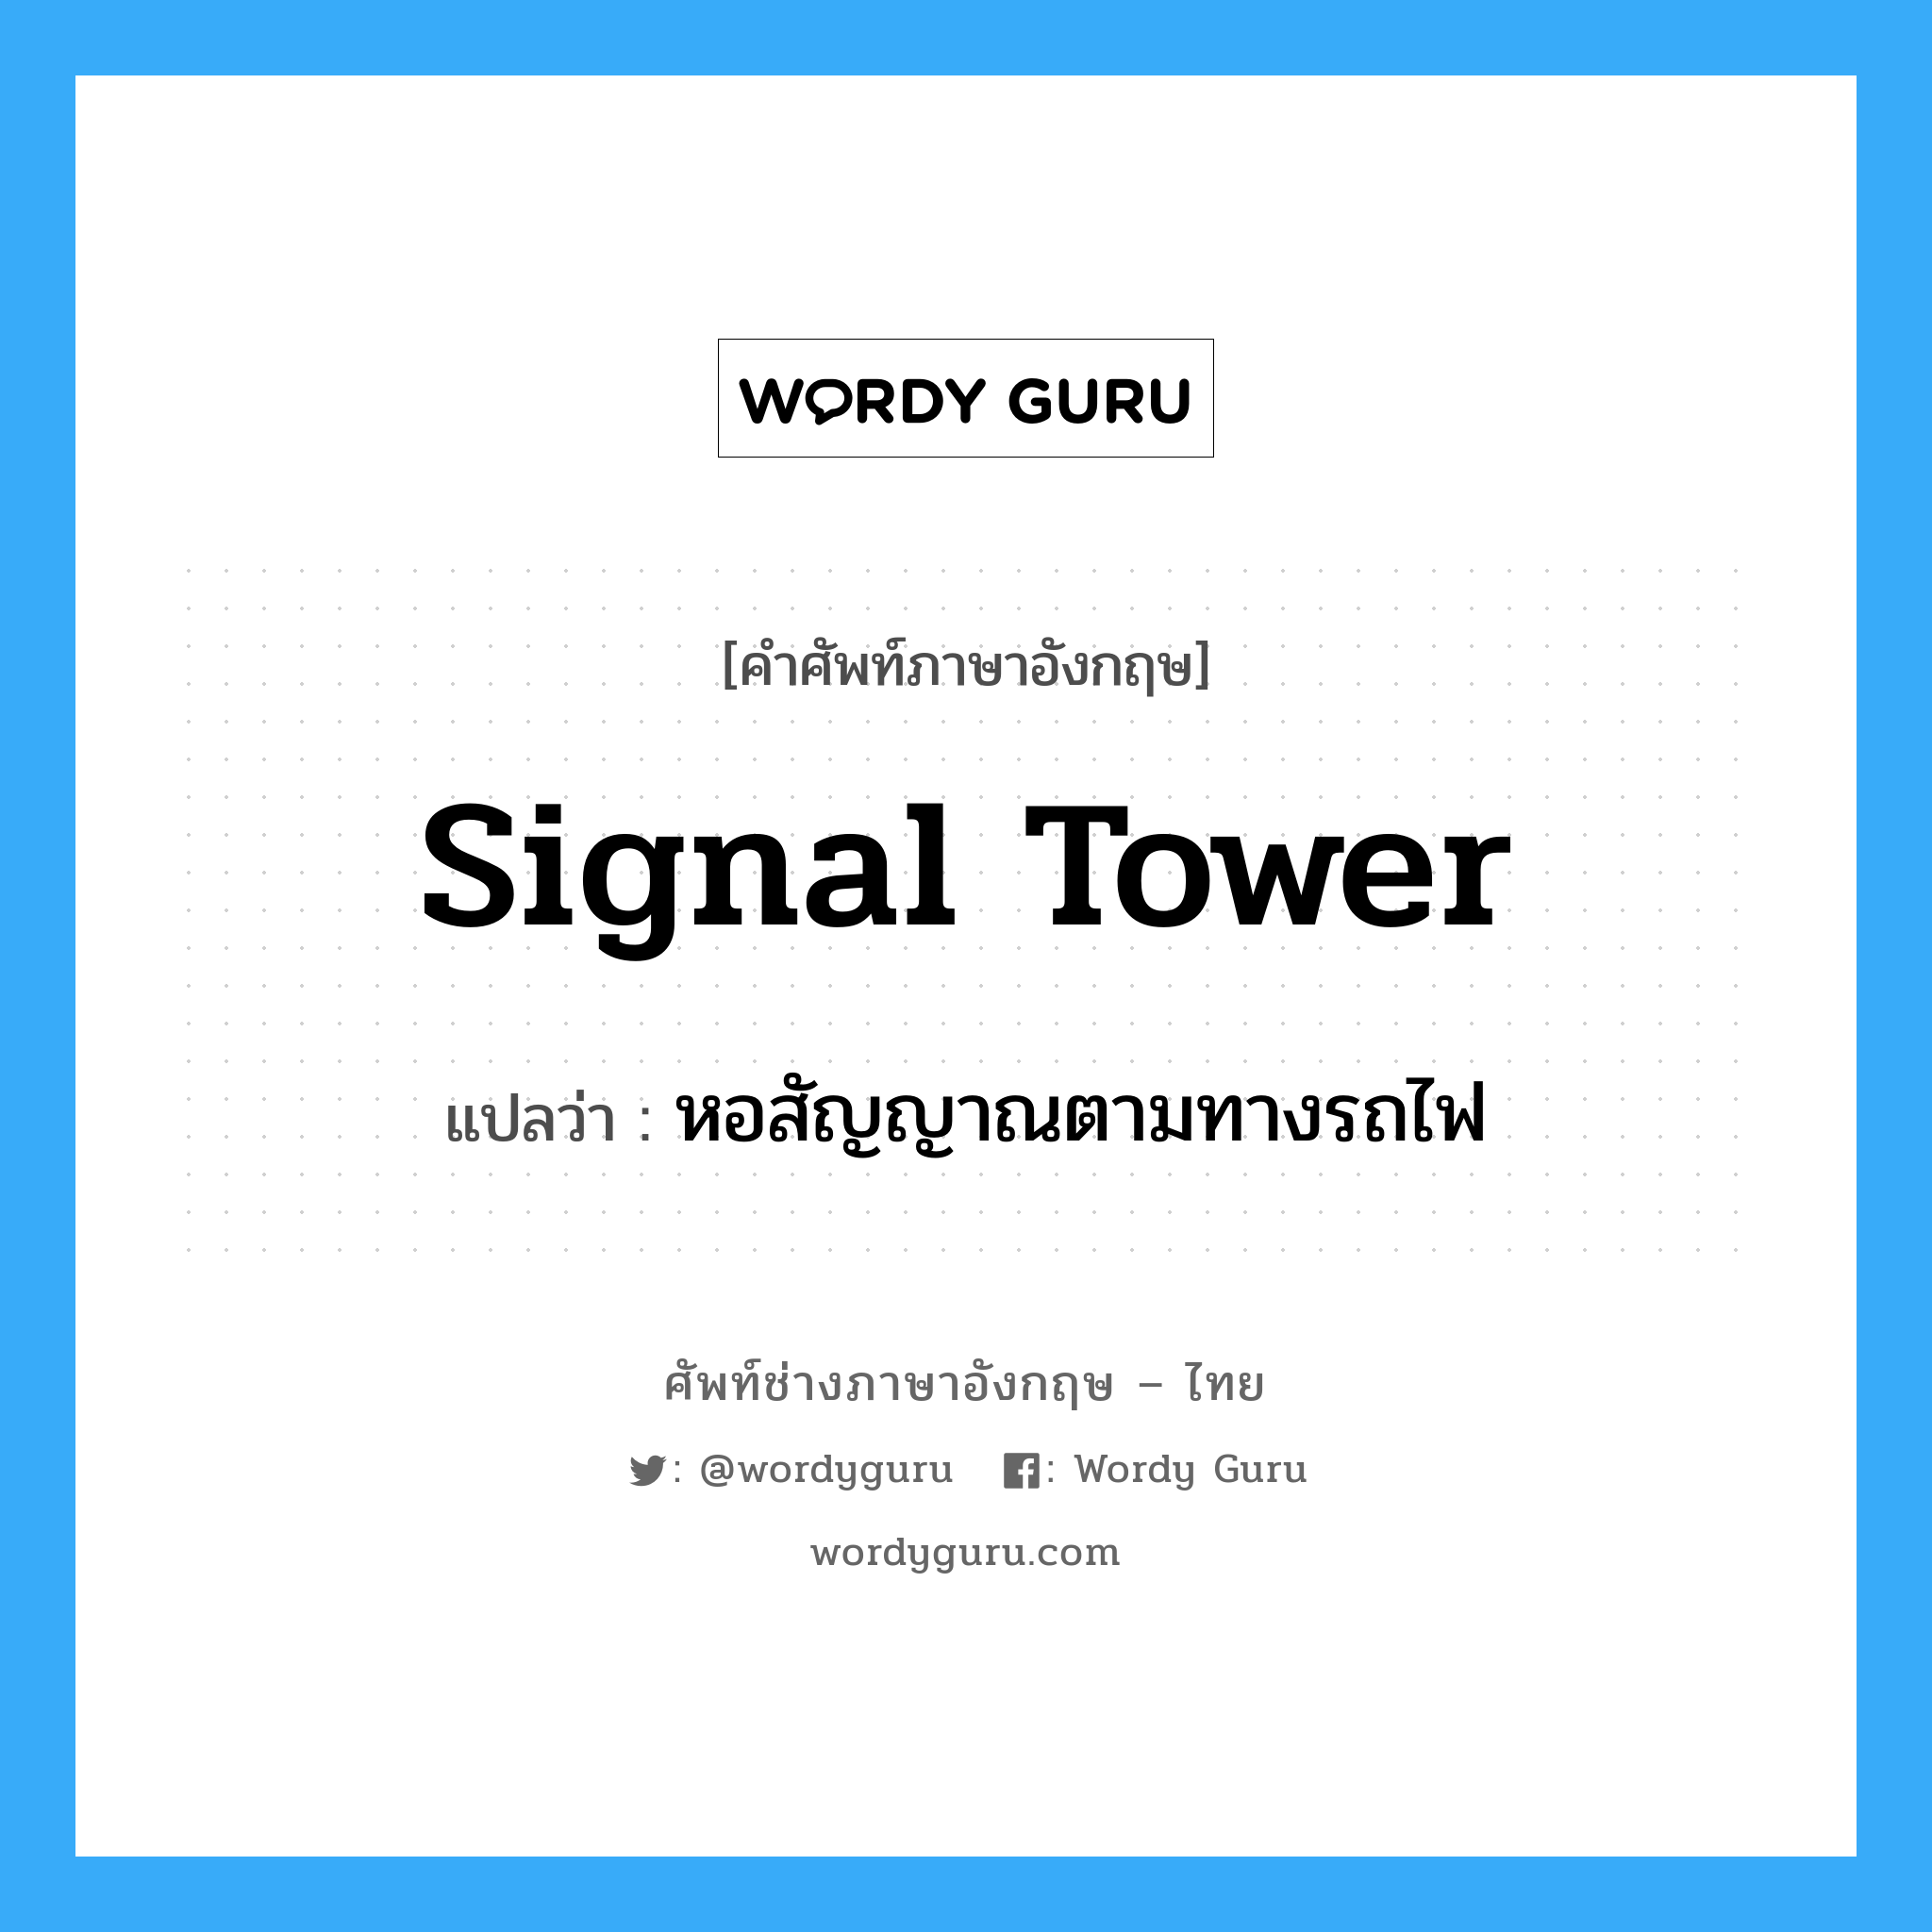 signal tower แปลว่า?, คำศัพท์ช่างภาษาอังกฤษ - ไทย signal tower คำศัพท์ภาษาอังกฤษ signal tower แปลว่า หอสัญญาณตามทางรถไฟ